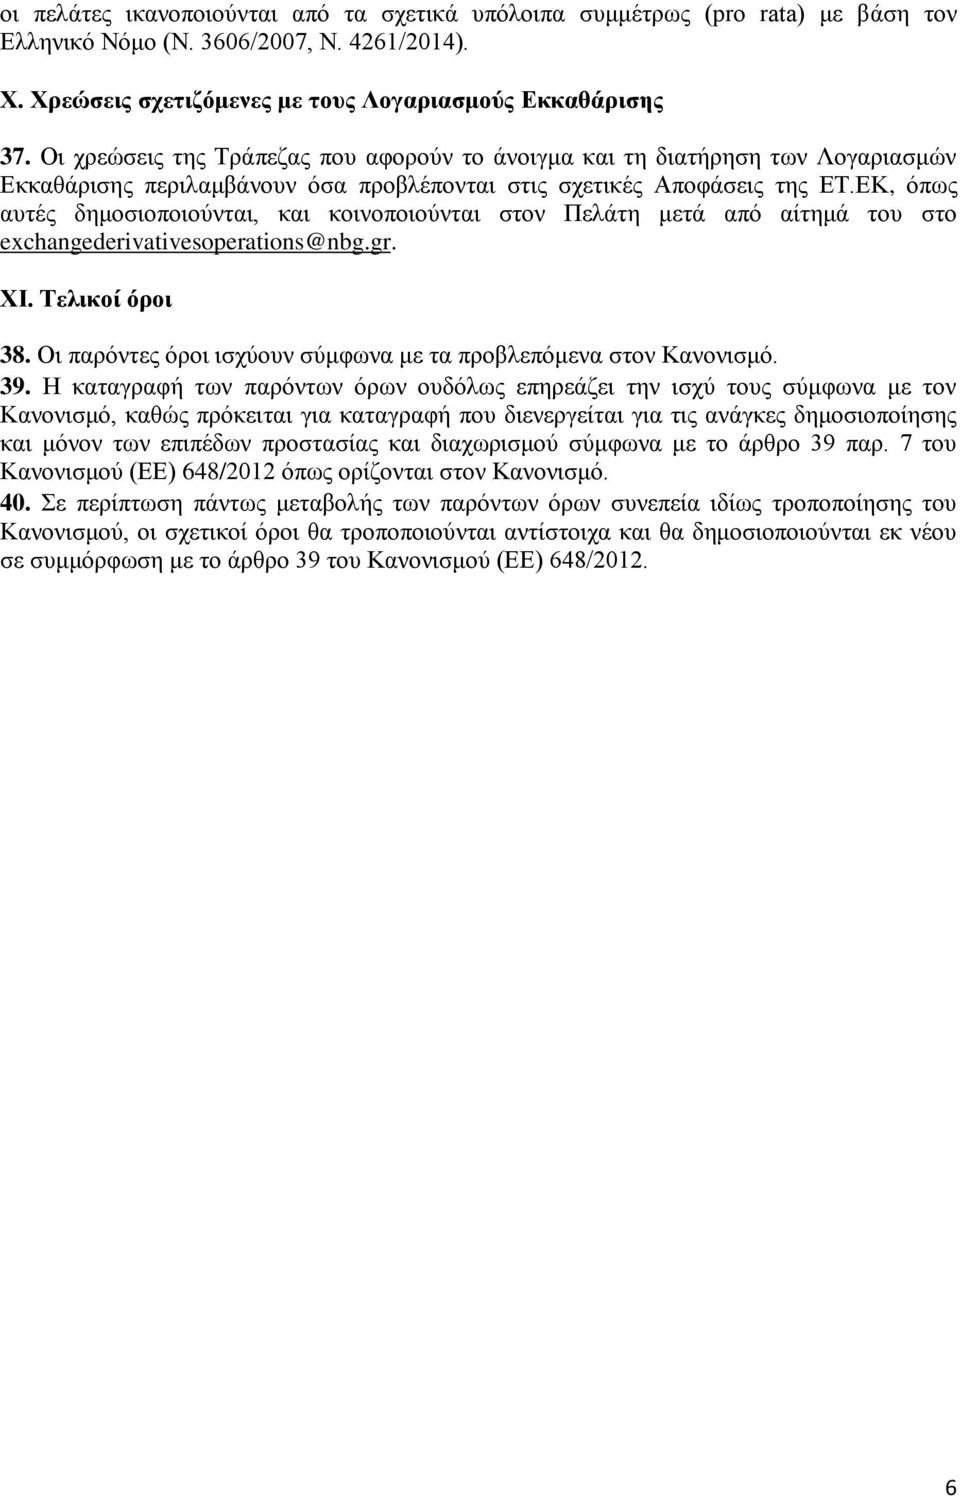 ΕΚ, όπως αυτές δημοσιοποιούνται, και κοινοποιούνται στον Πελάτη μετά από αίτημά του στο exchangederivativesoperations@nbg.gr. XI. Τελικοί όροι 38.